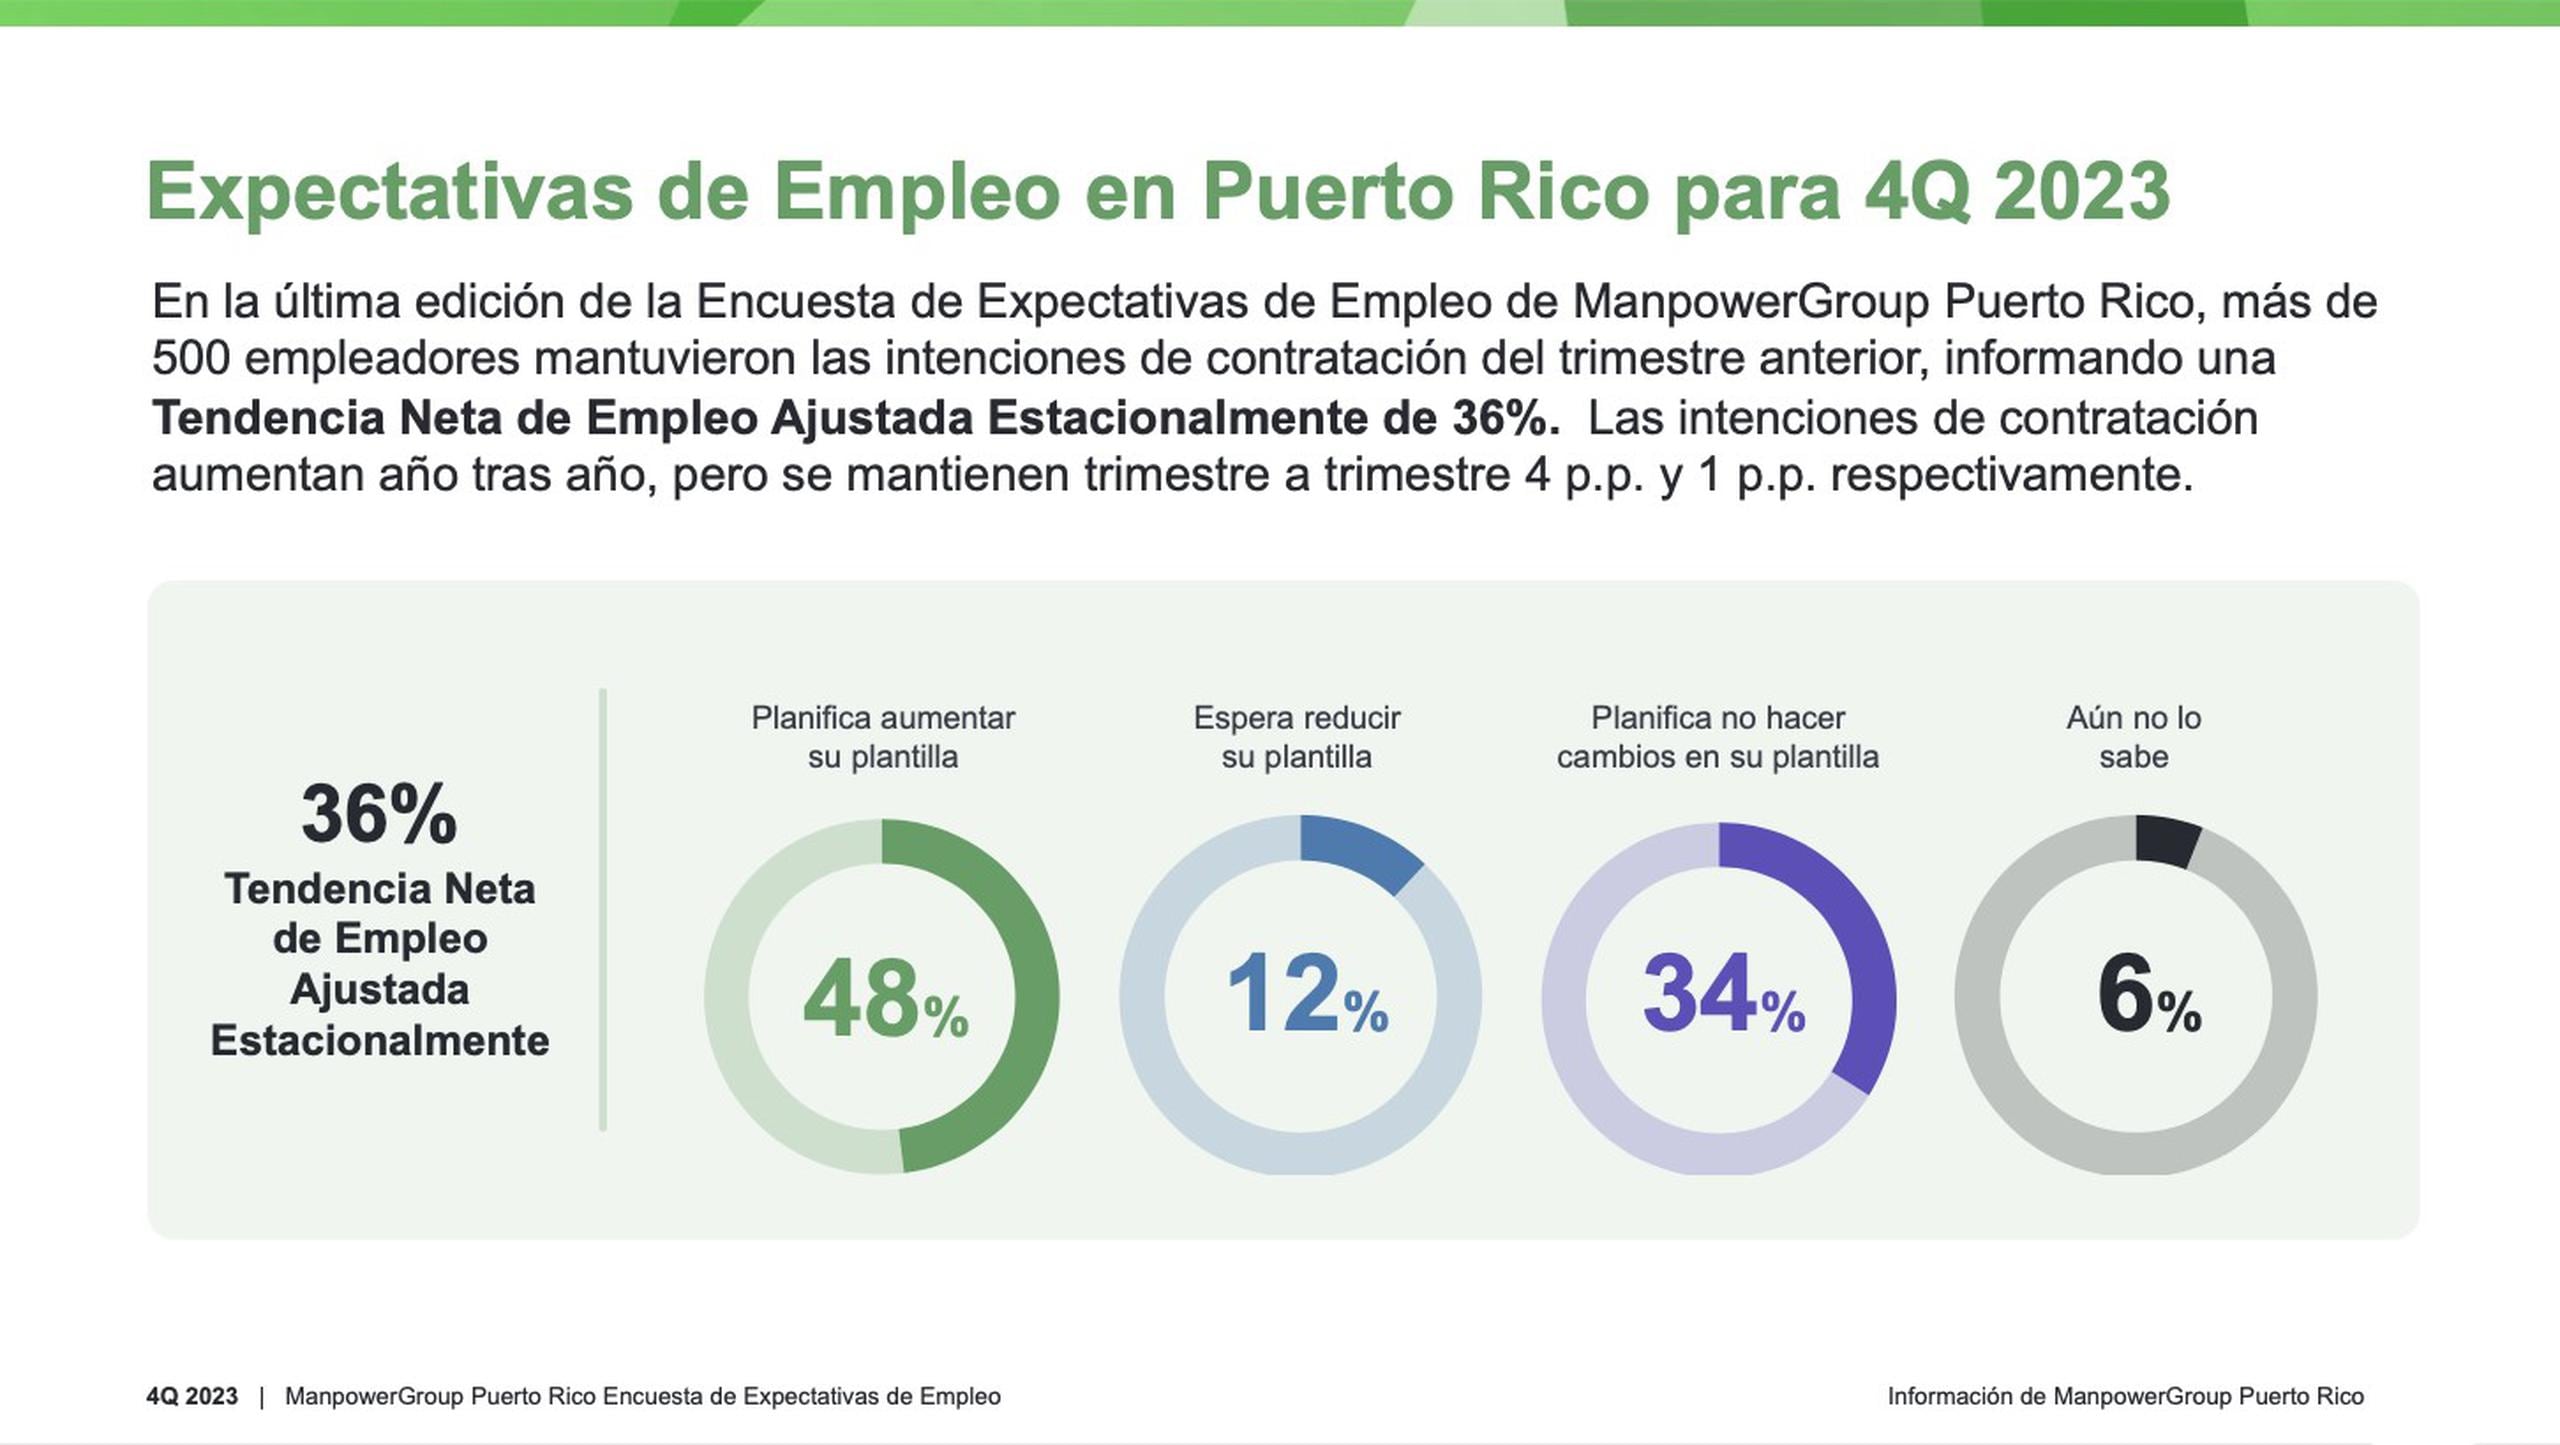 Unos 510 patronos que respondieron la encuesta en Puerto Rico tienen una intención de contratación de un 36%, un punto porcentual más que en el tercer trimestre del año.